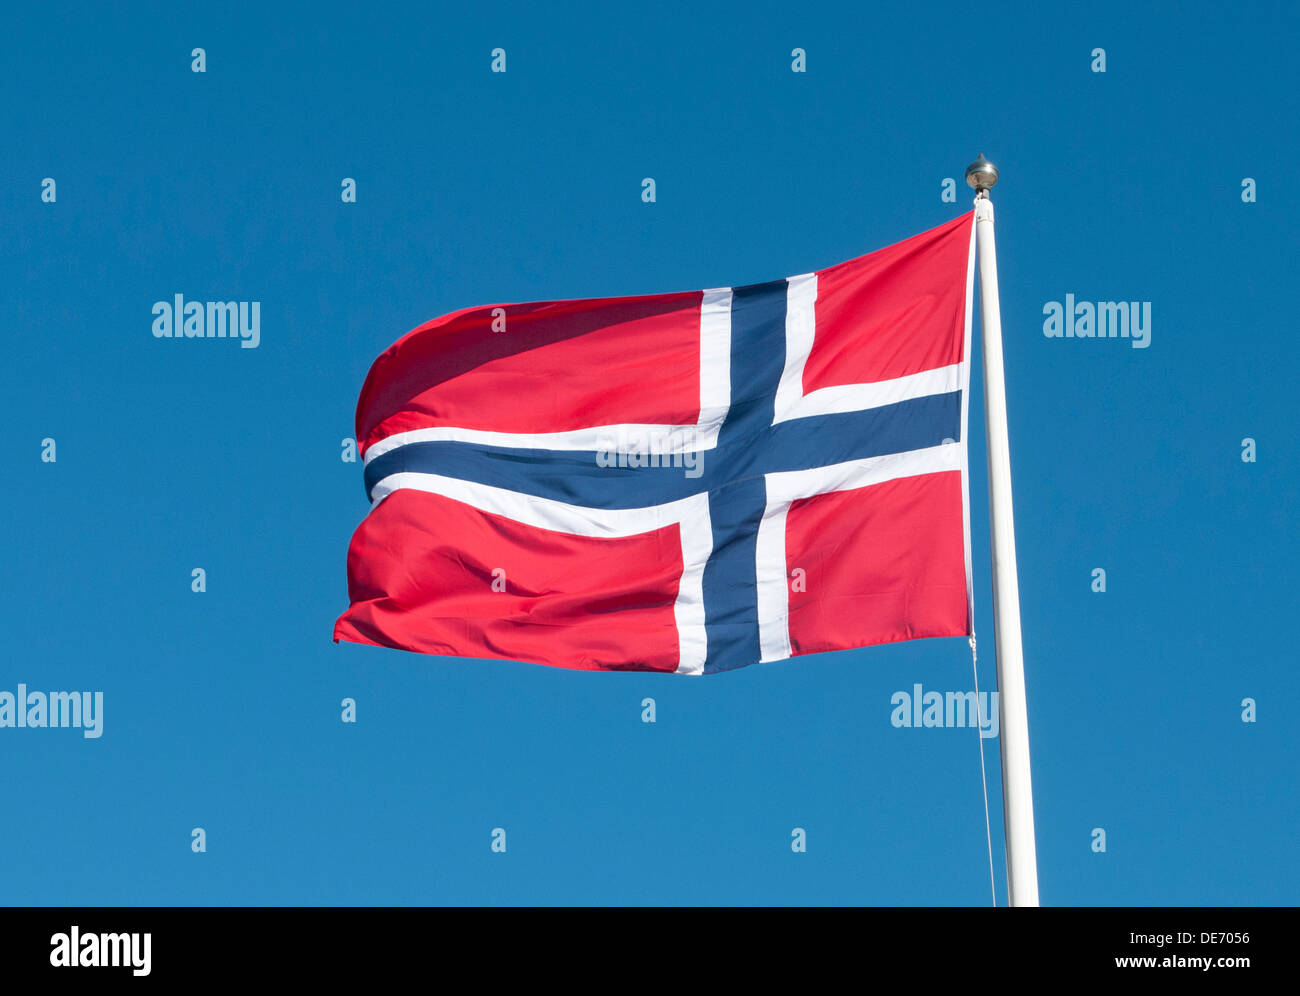 Norwegian flag flying against blue sky Stock Photo